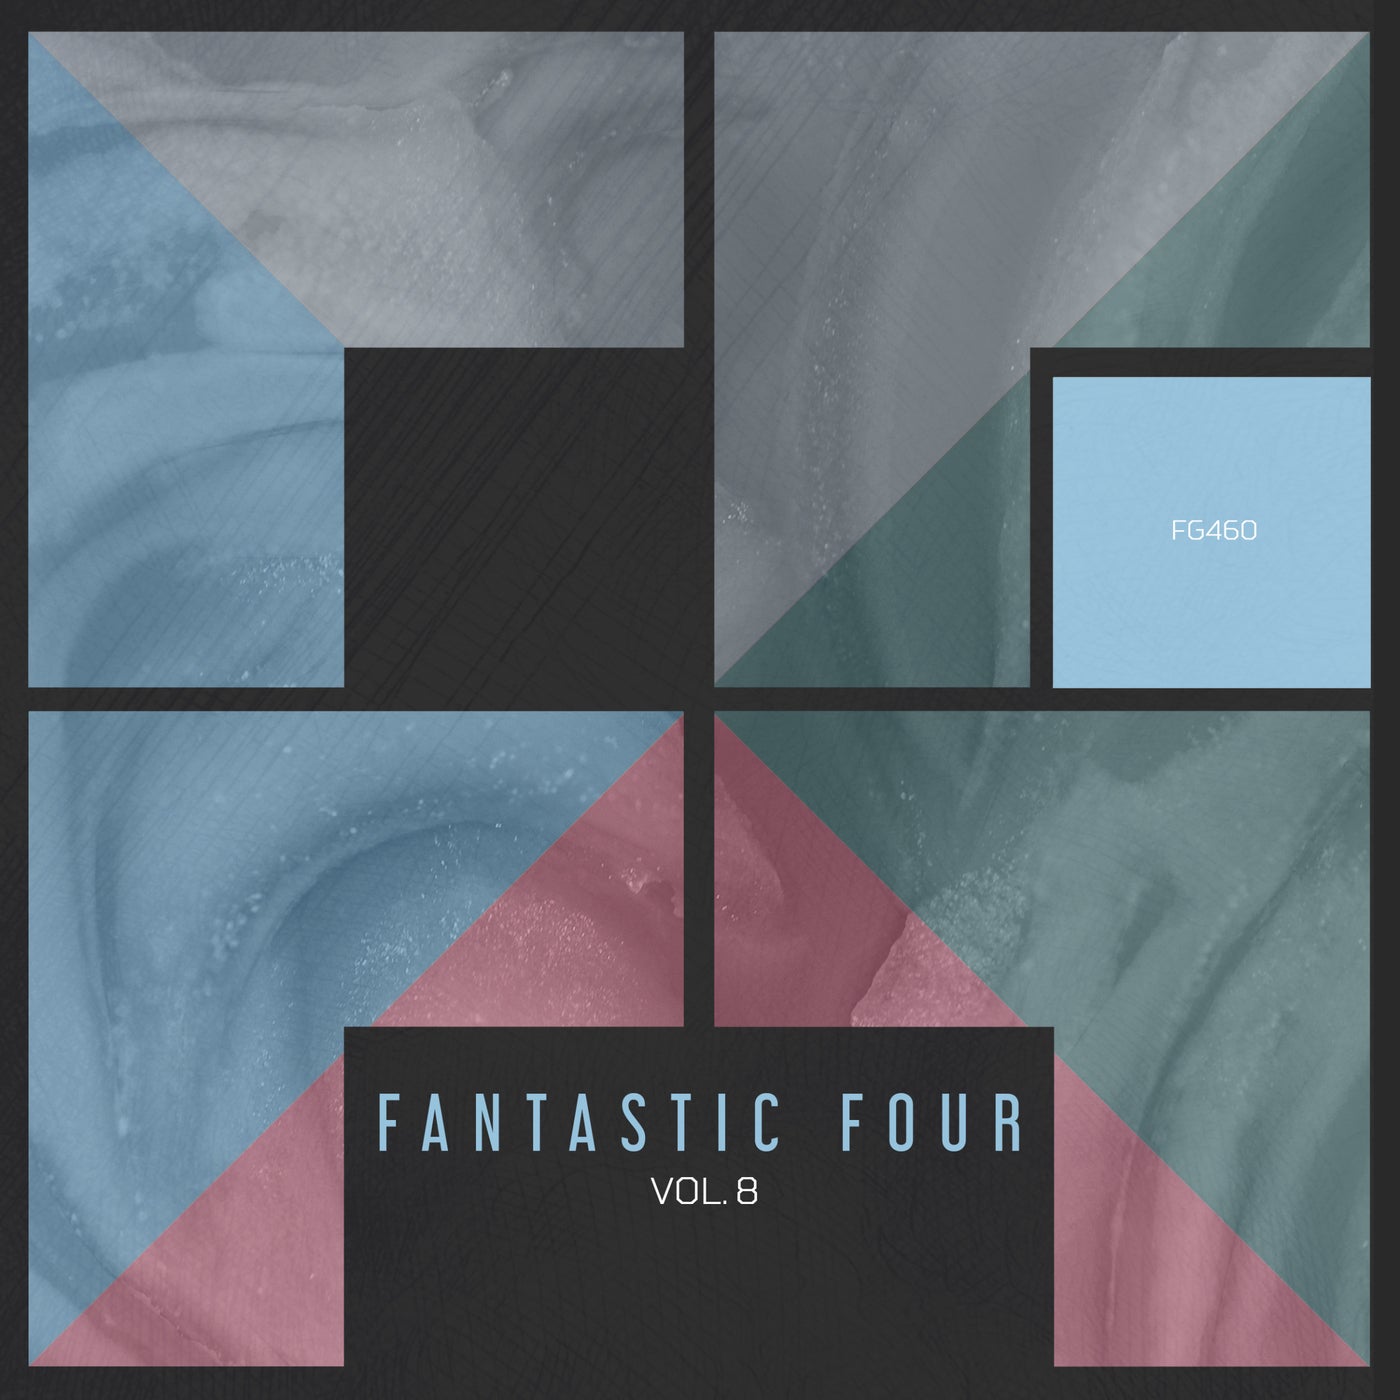 VA - Fantastic Four vol.8 [FG460]